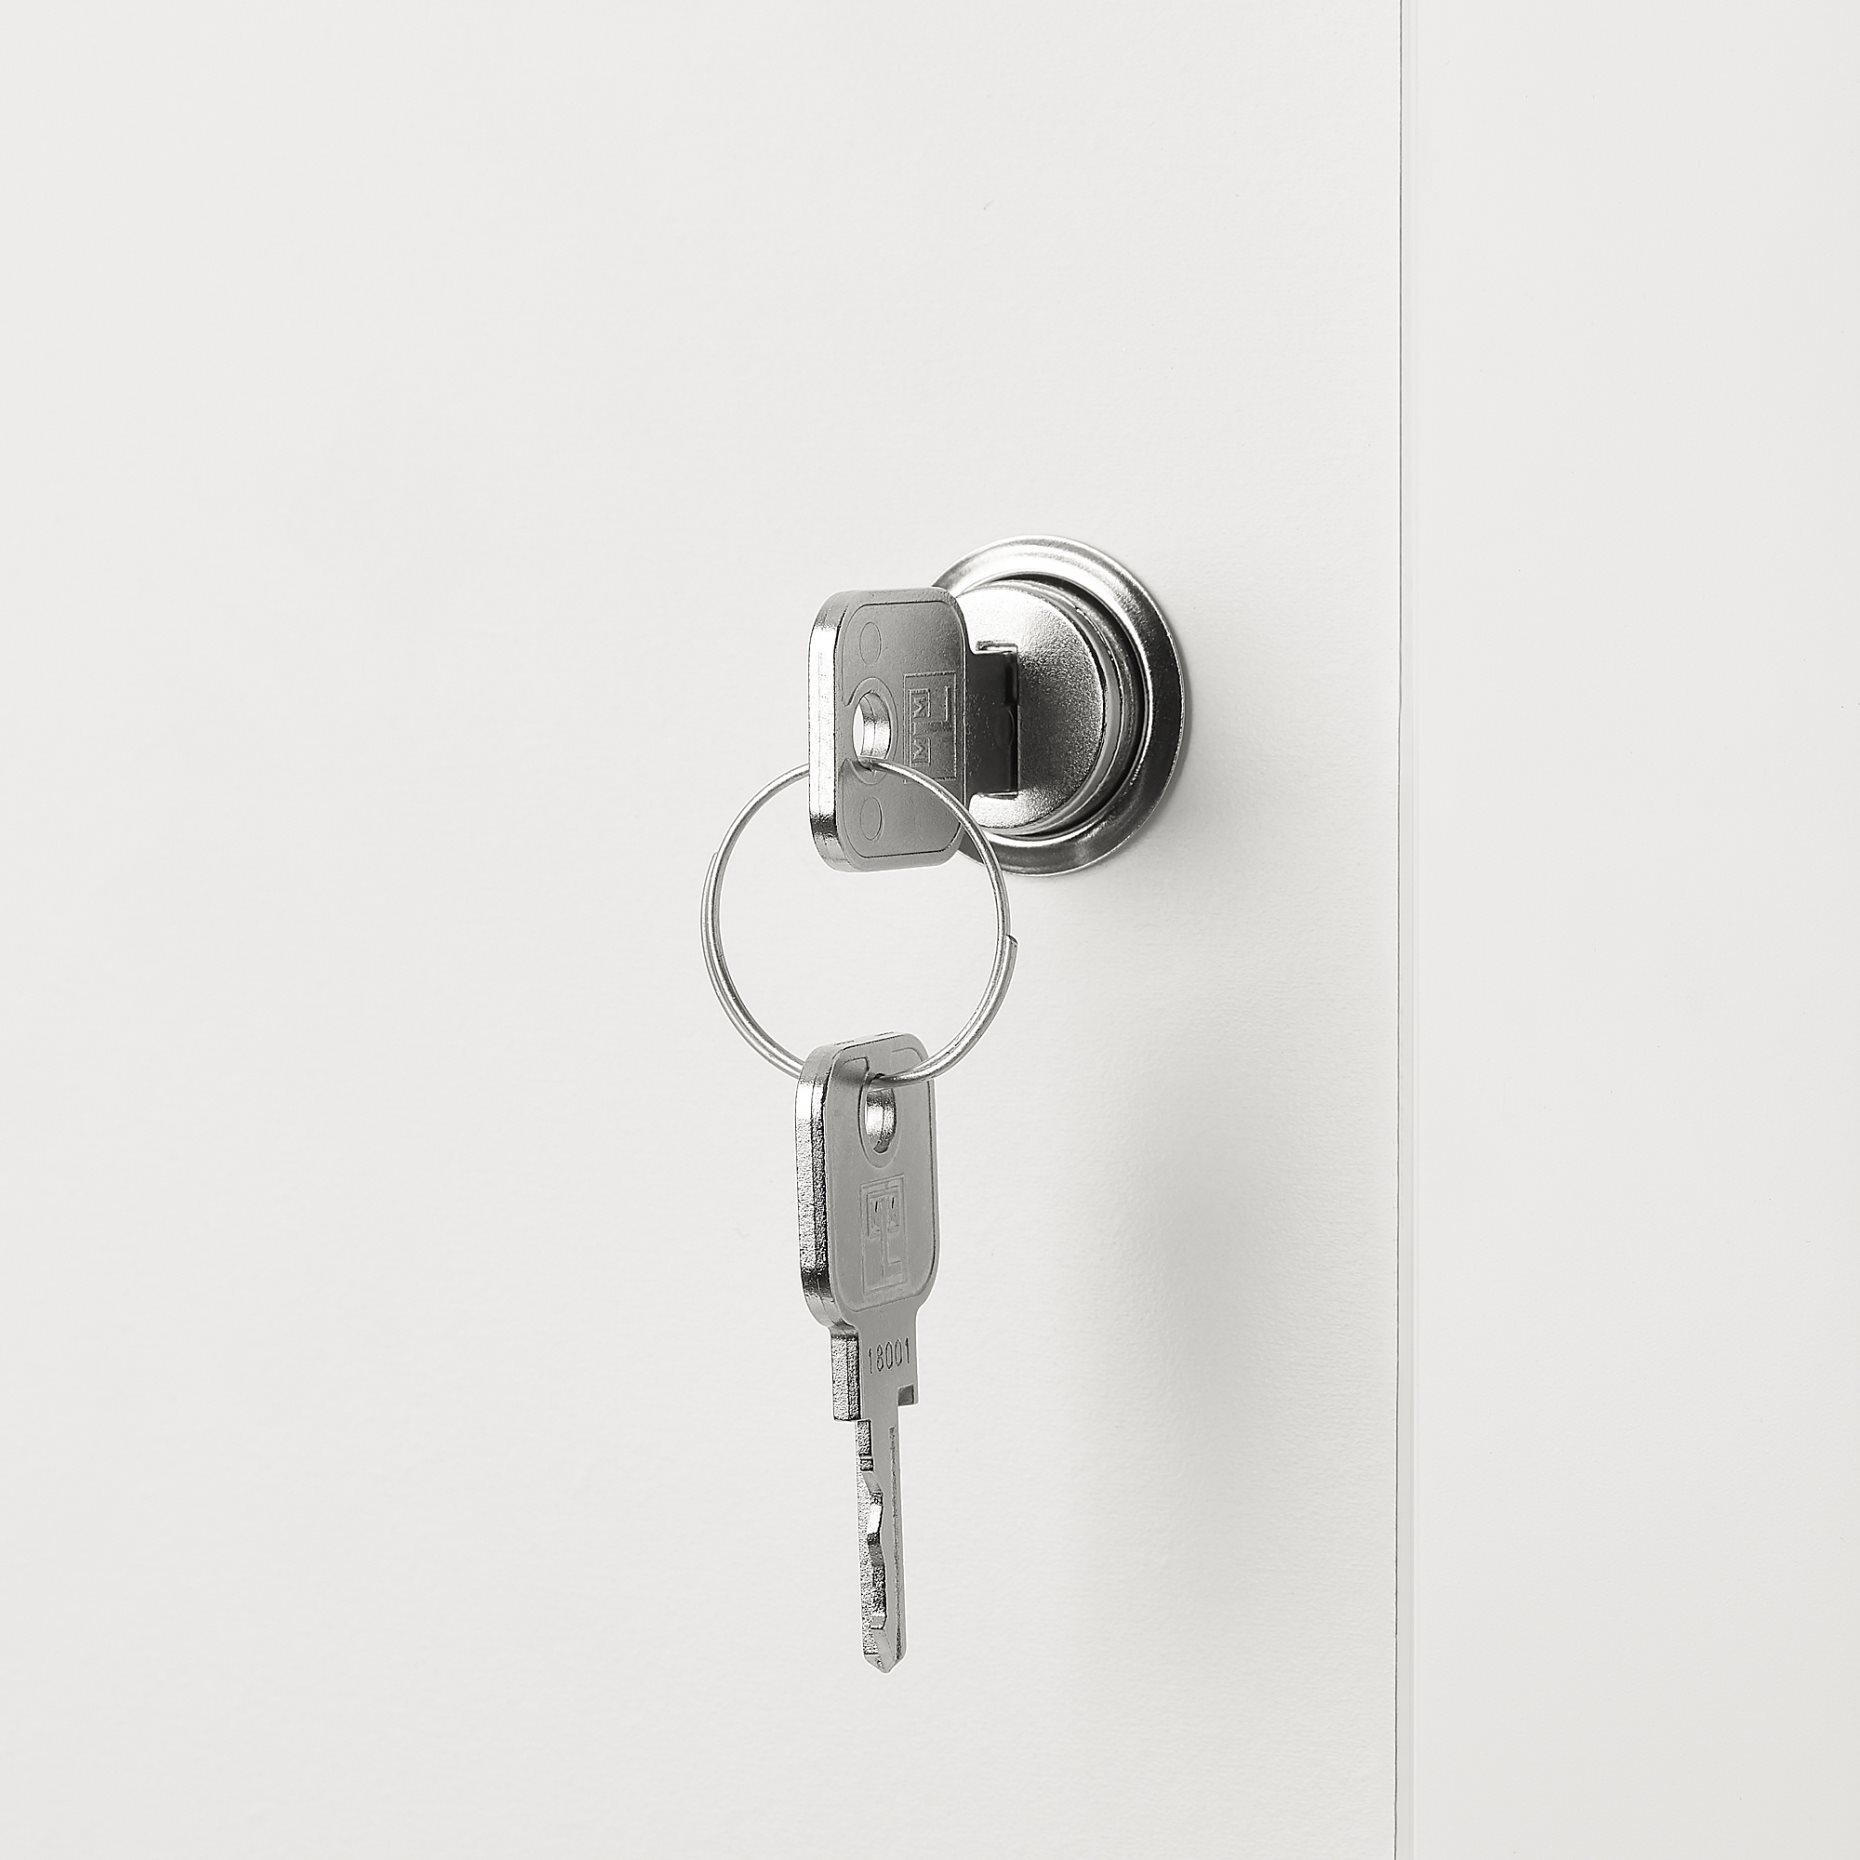 KALLAX, insert with lockable door, 33x33 cm, 405.442.74